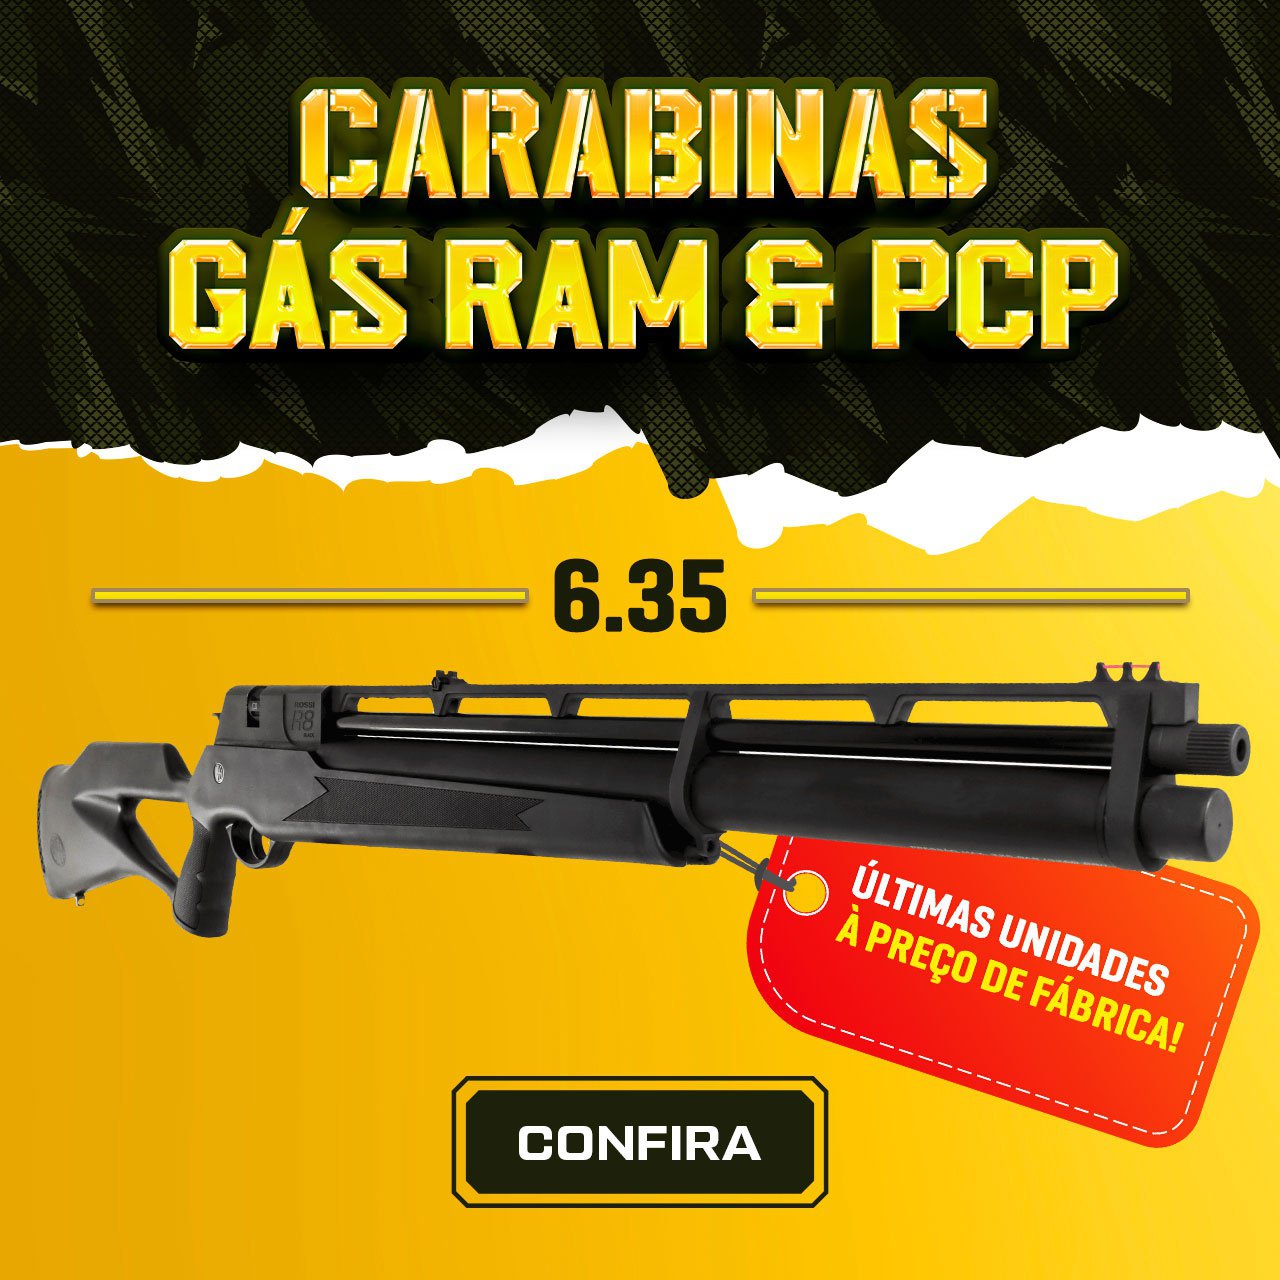 CARABINAS GAS RAM & PCP - 6.35 - Últimas Unidades à Preço de Fábrica!